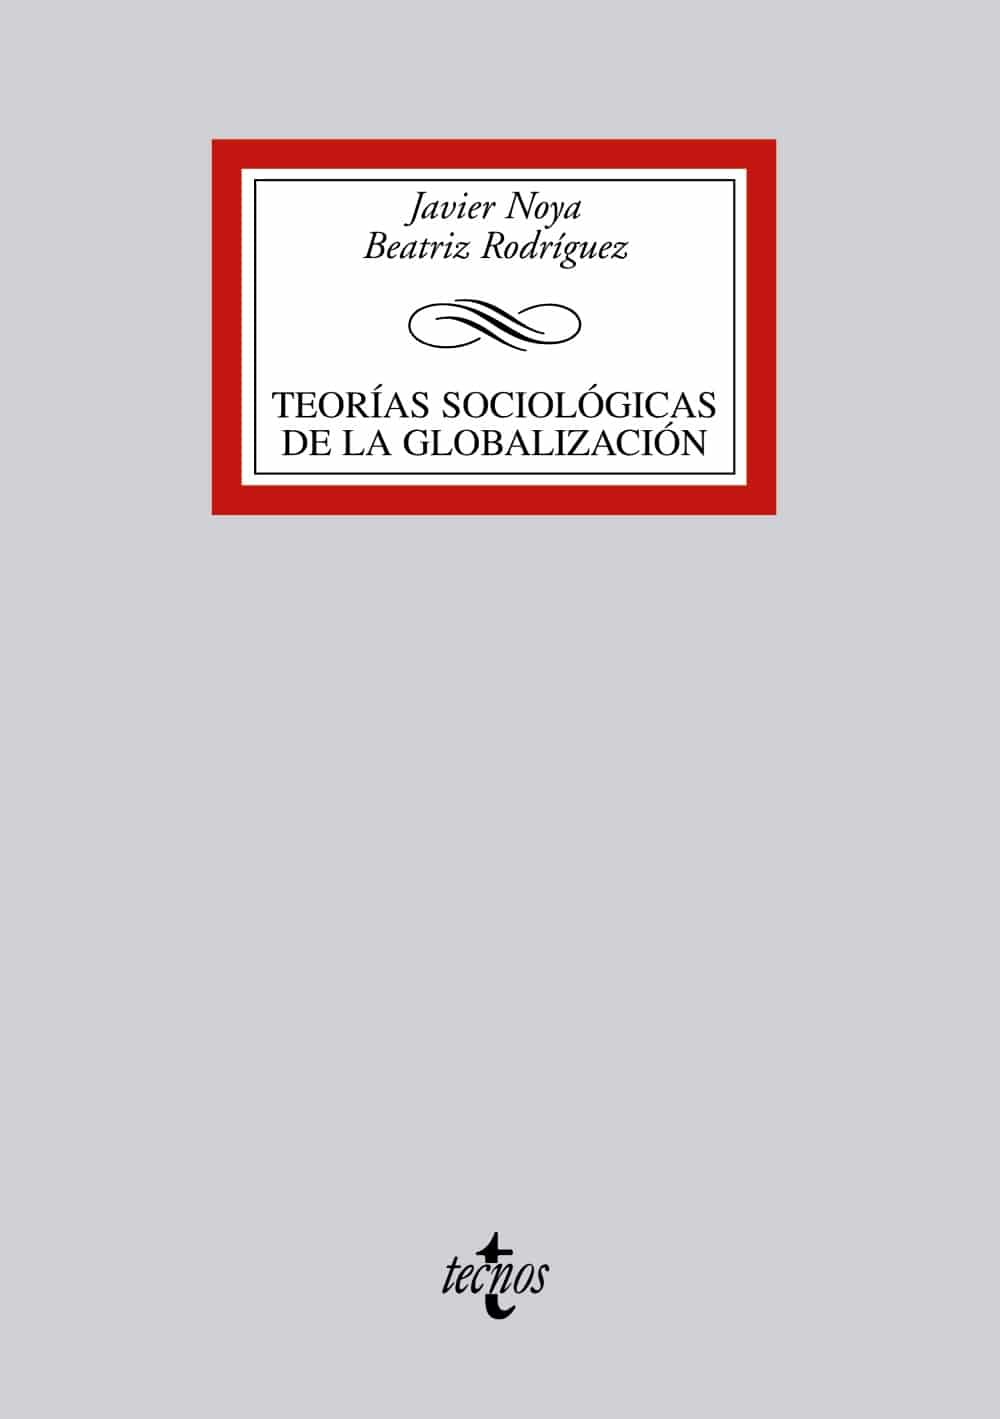 Teorías sociologicas de la globalización